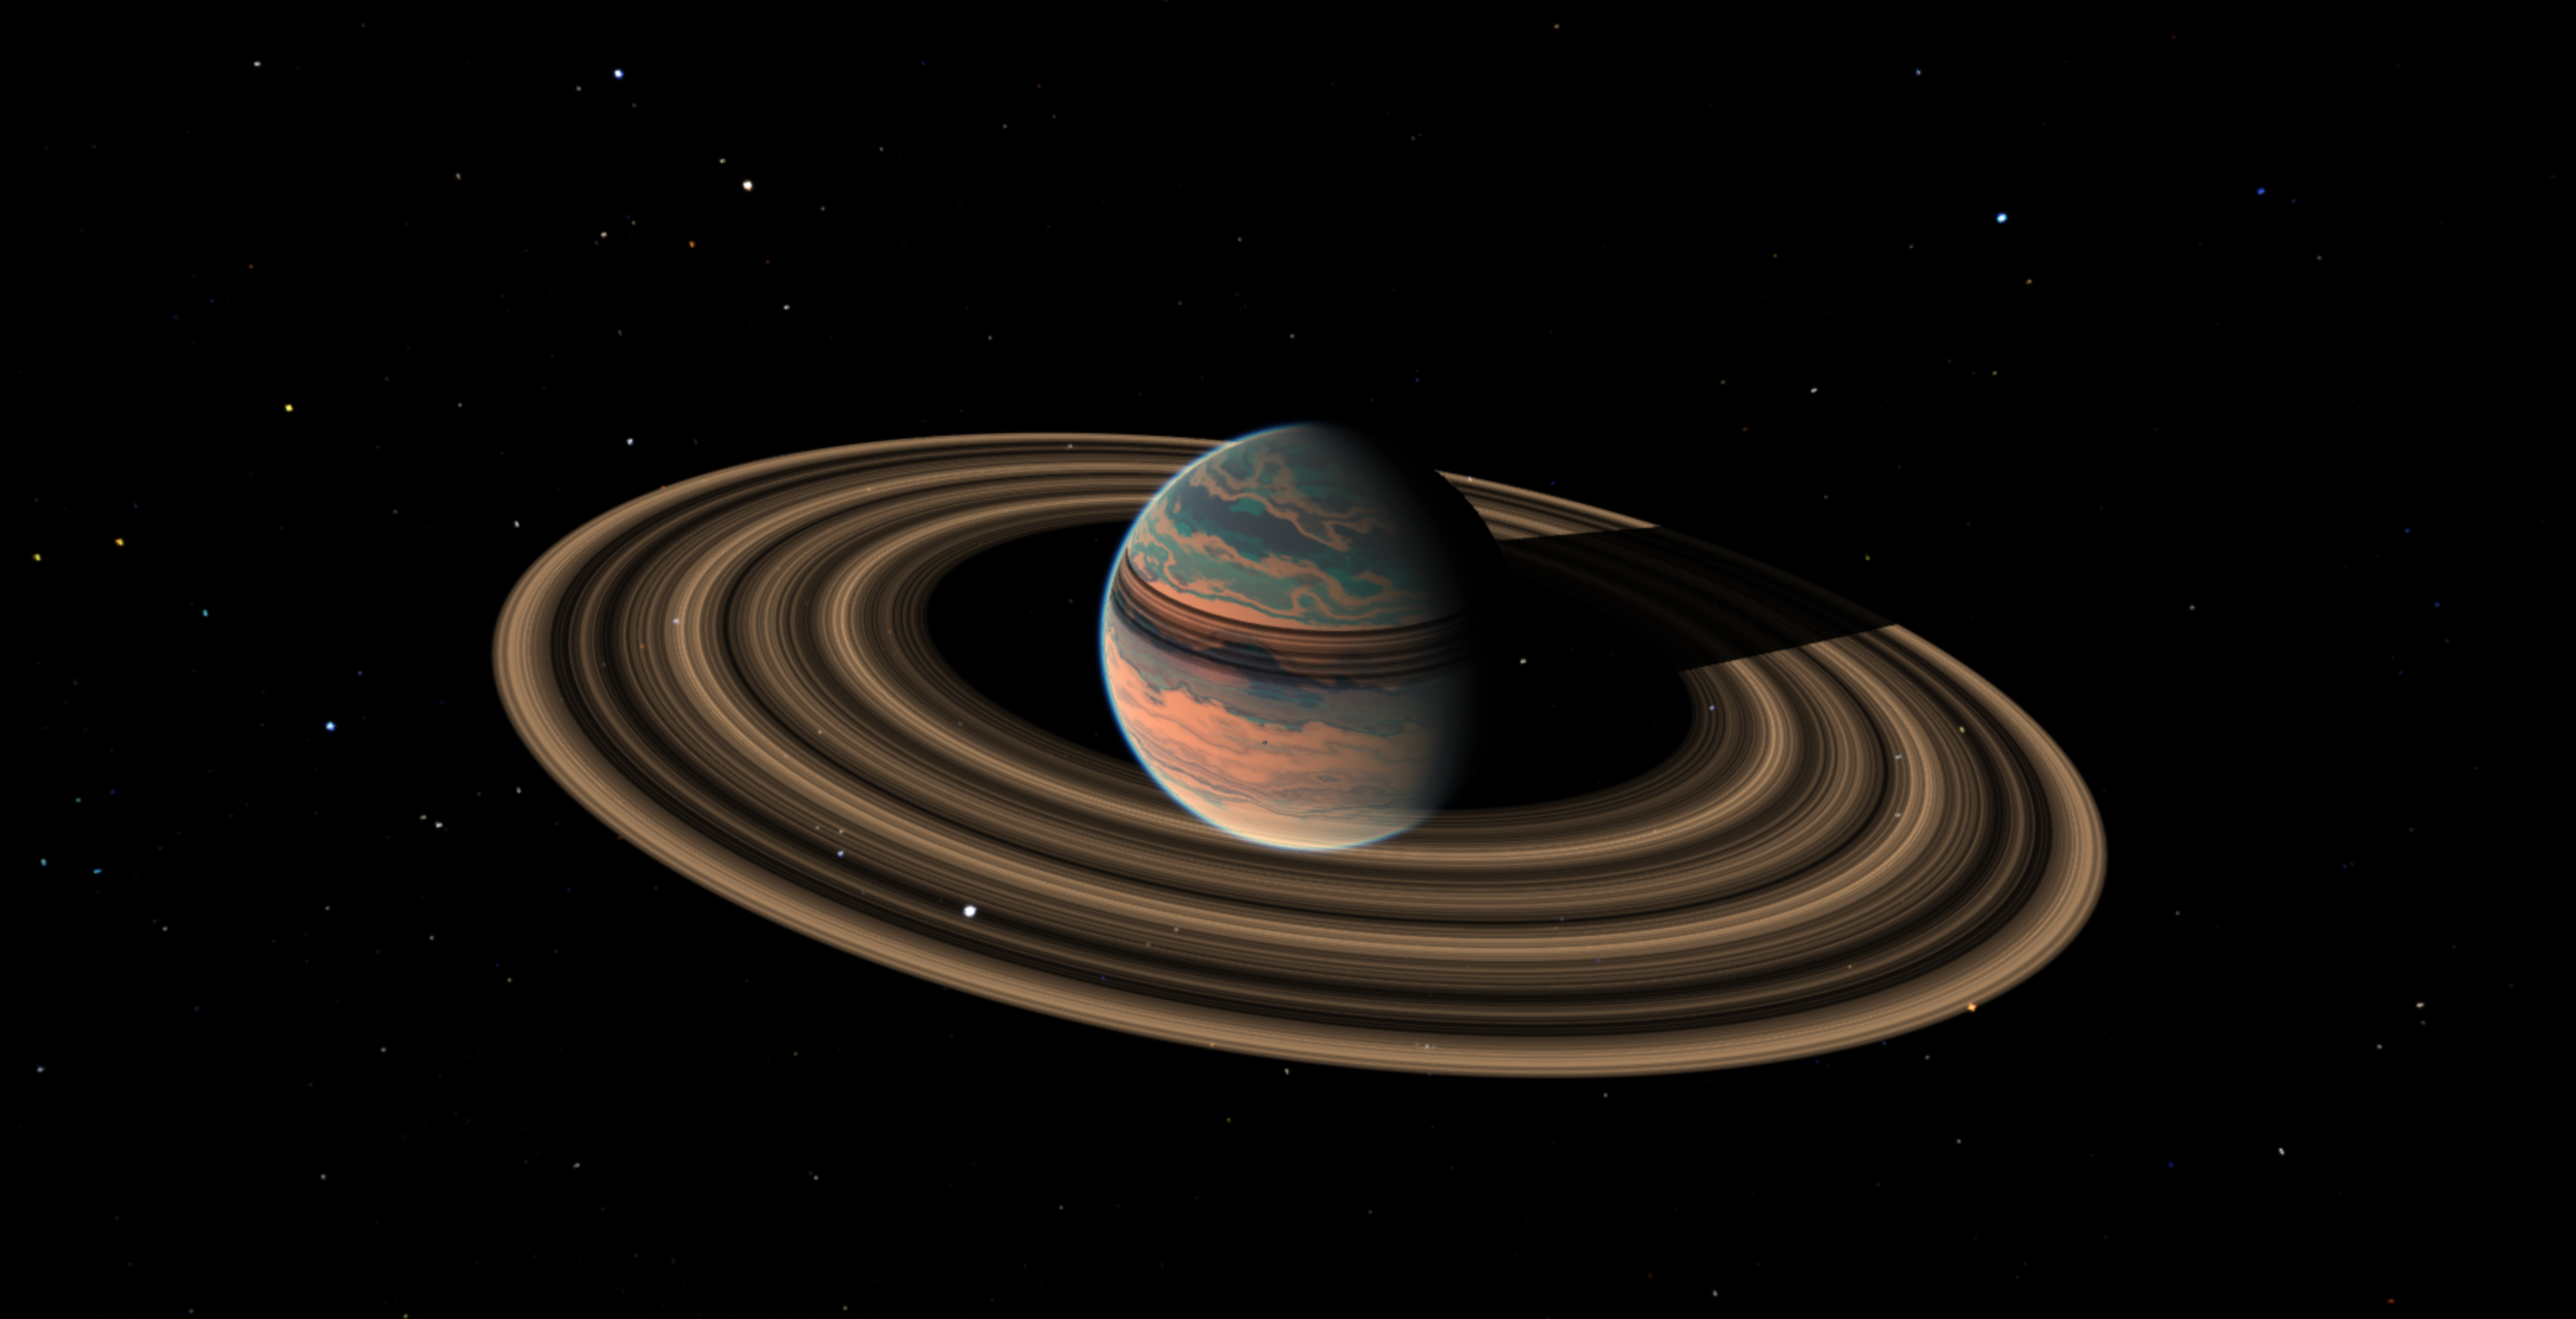 Planetary rings